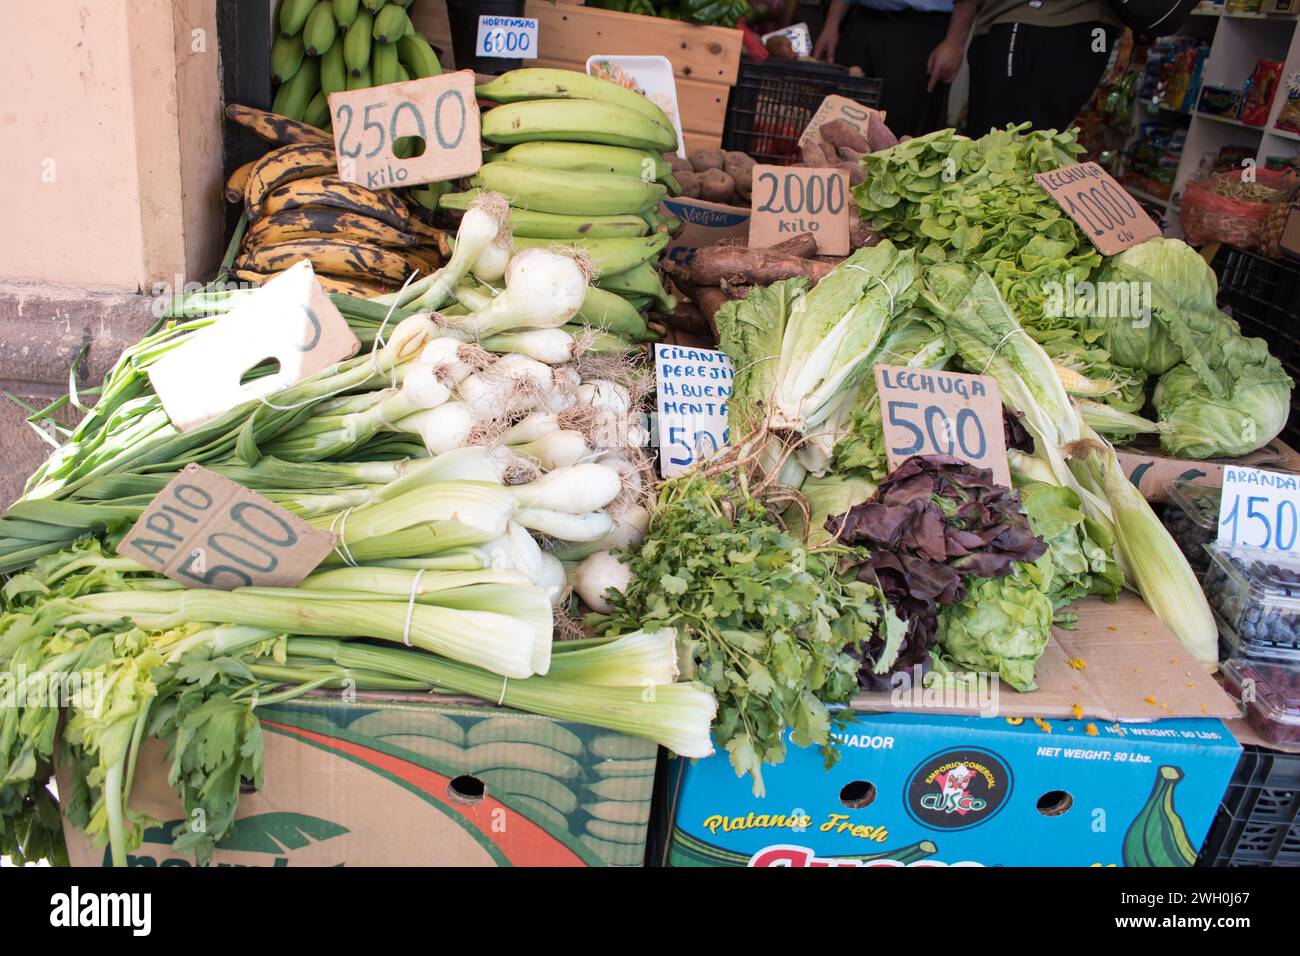 Les étals du marché entourant Mercado Central au Chili offrent une gamme dynamique de produits, y compris des fruits et légumes frais. Banque D'Images